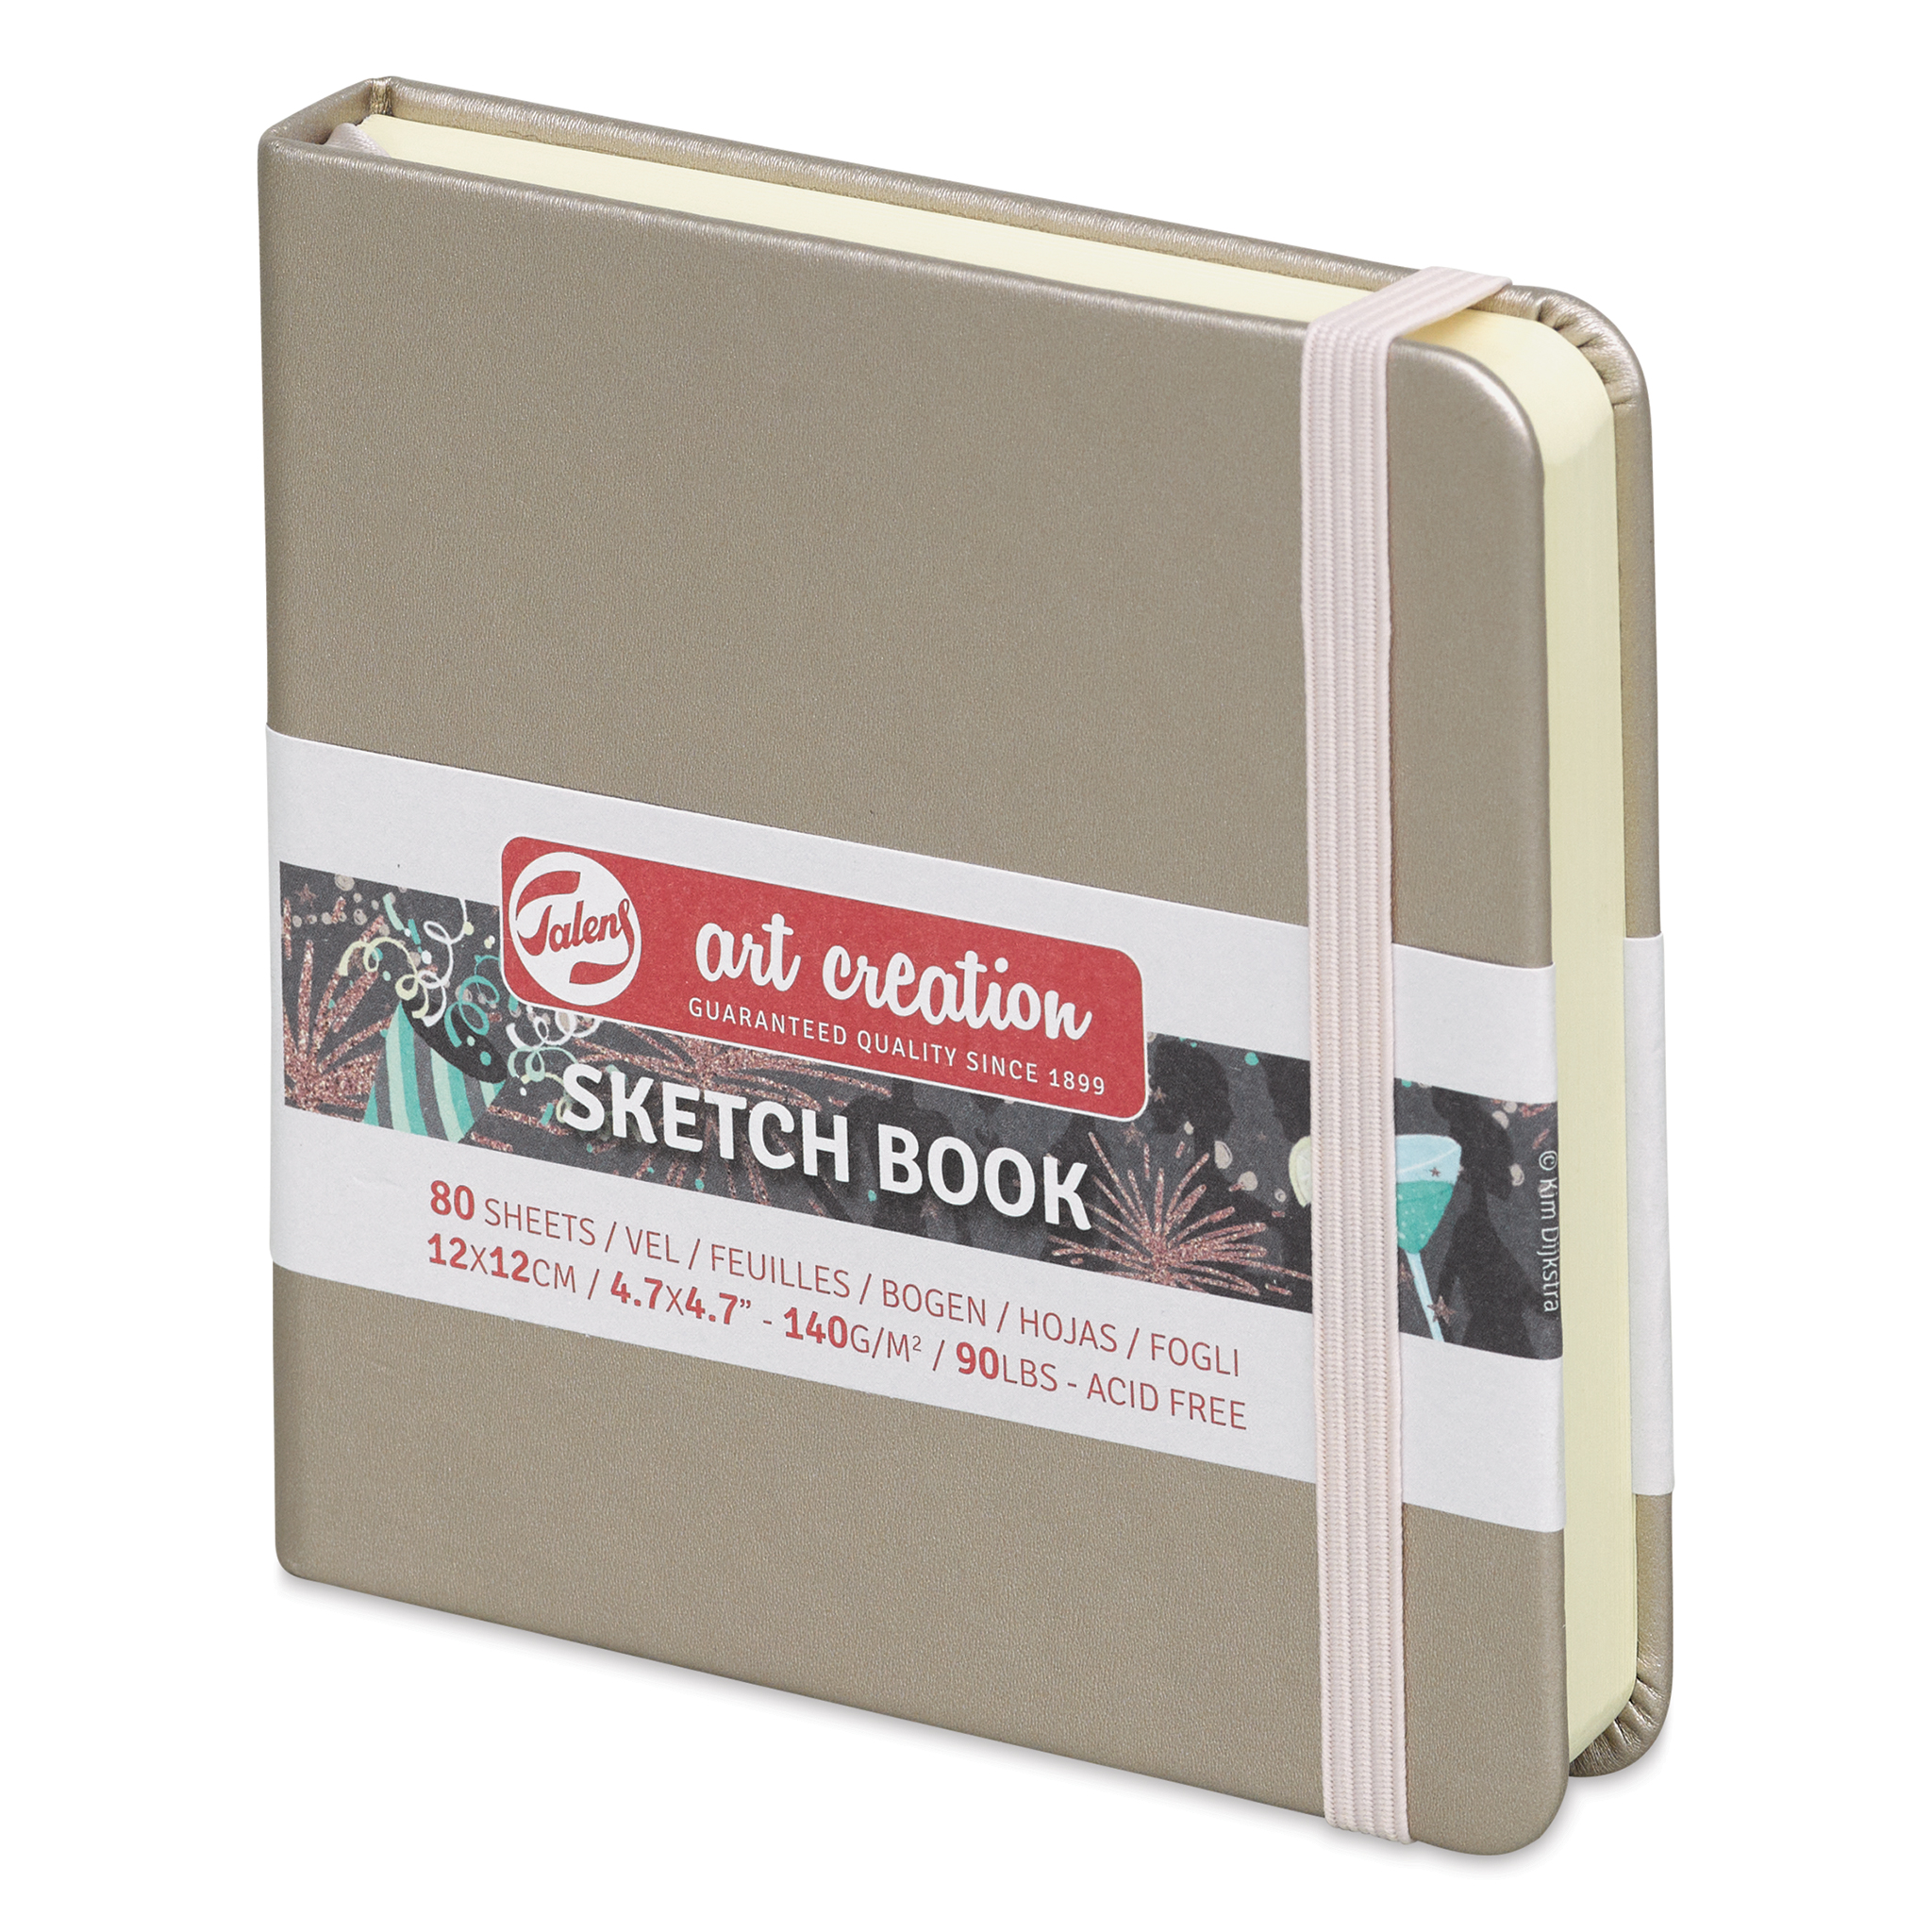 Talens Art Creation Sketchbook - Mint - 4.75x4.75